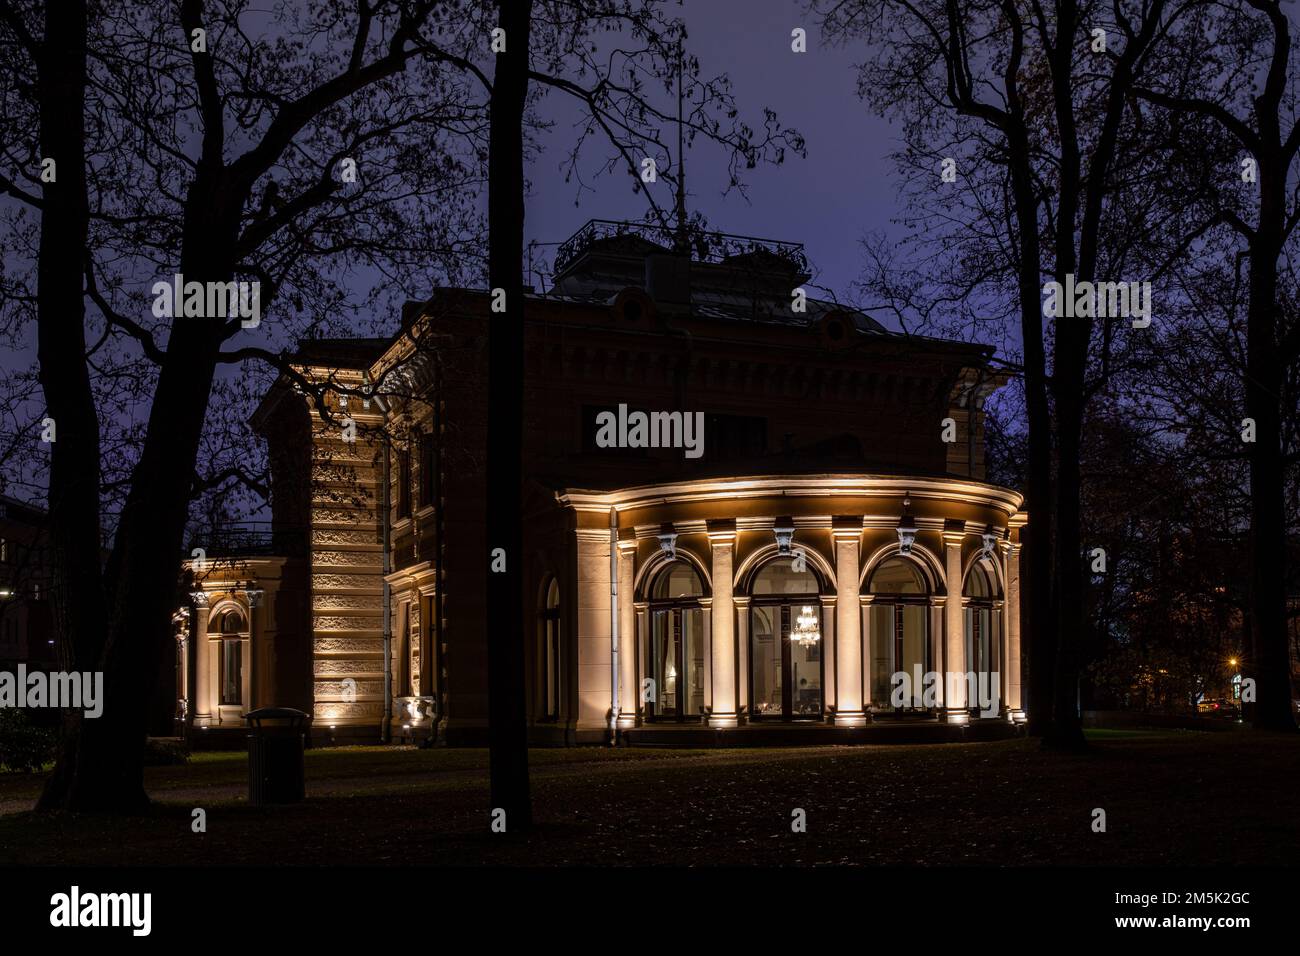 Illuminated Neo-Renaissance style Finlaysonin Palatsi after dark in Tampere, Finland Stock Photo